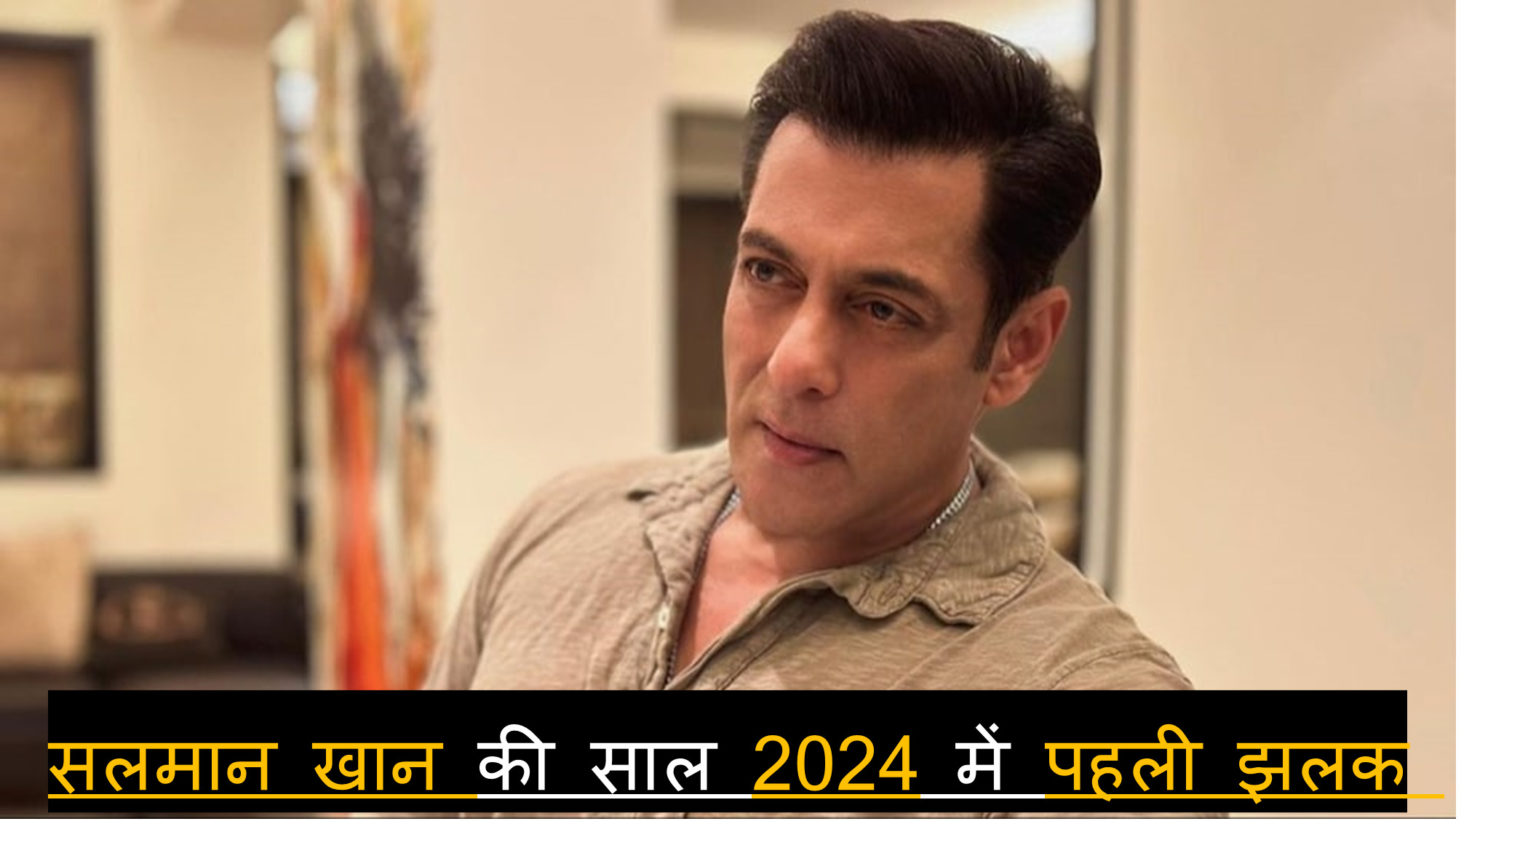 Salman Khan : सलमान खान की साल 2024 में पहली झलक पाकर गदगद हुए फैंस, फैशन सेंस को देख चढ़ा ट्रोल्स का पारा